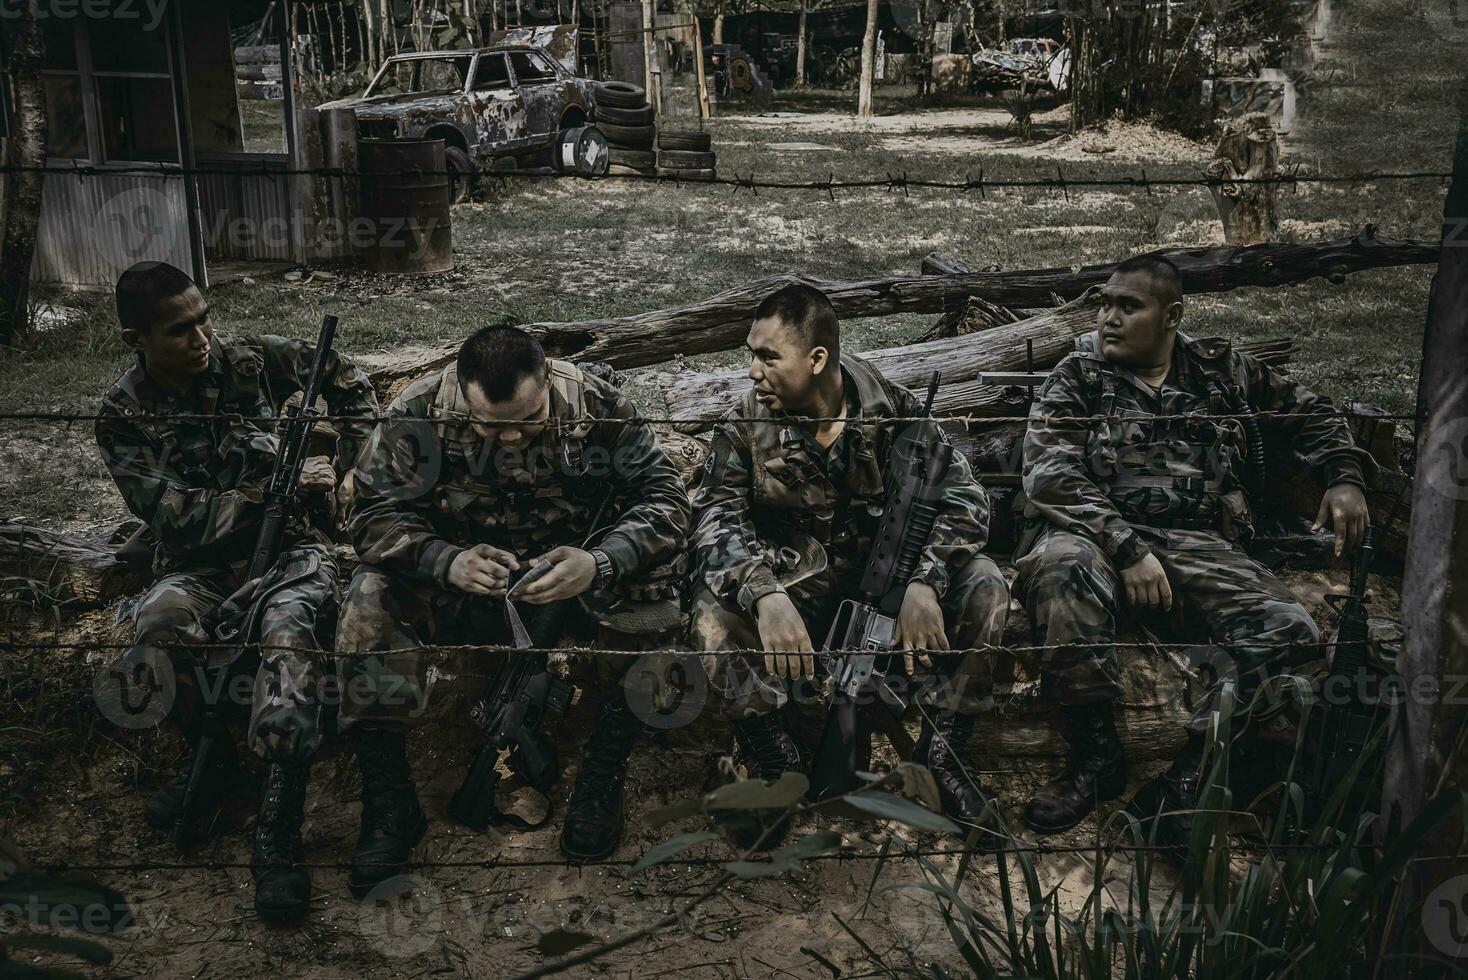 team av armésoldat med maskingevär som rör sig i skogen, thailändsk milissoldat i stridsuniformer i skogen, vandra patrullen som sluttar i regnskogen. foto